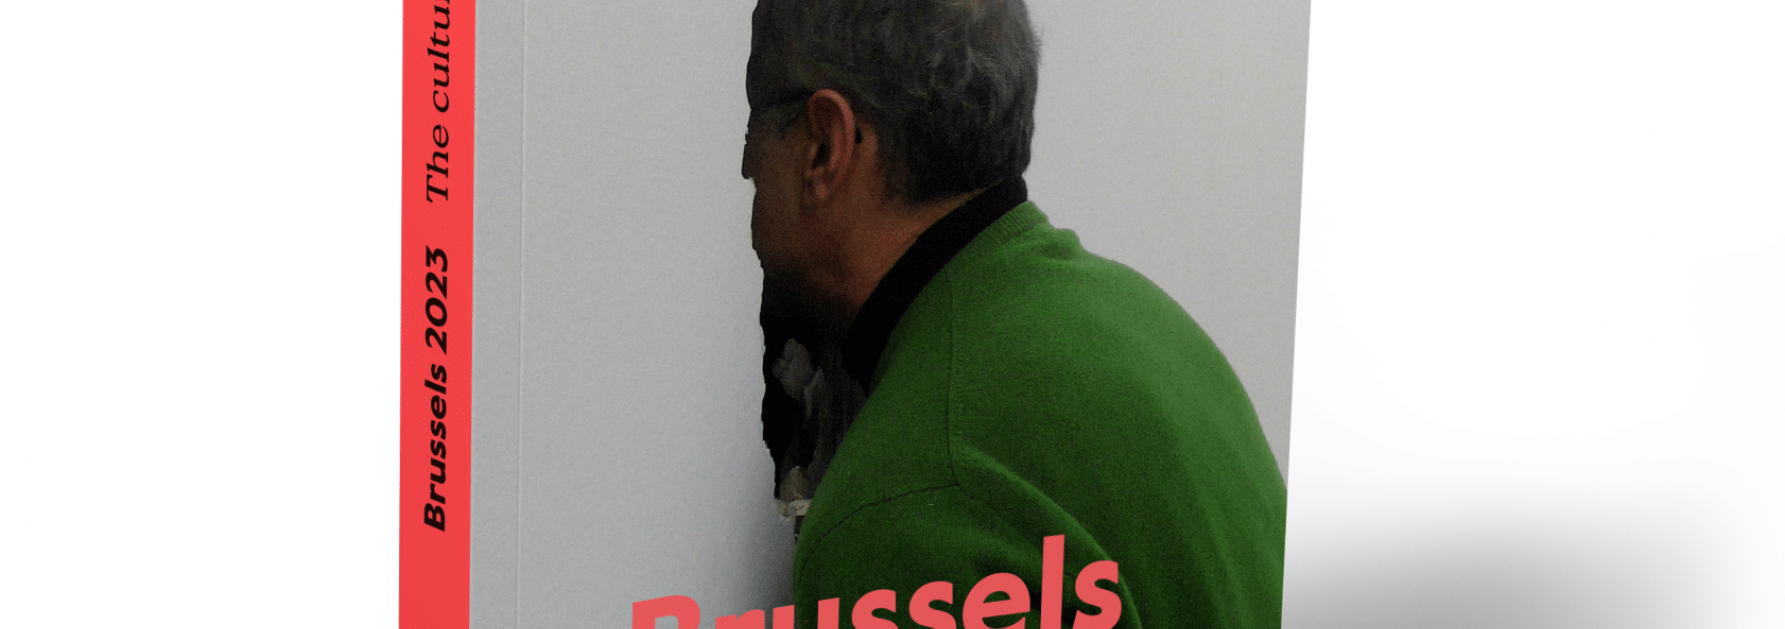 Cultuurgids Brussel